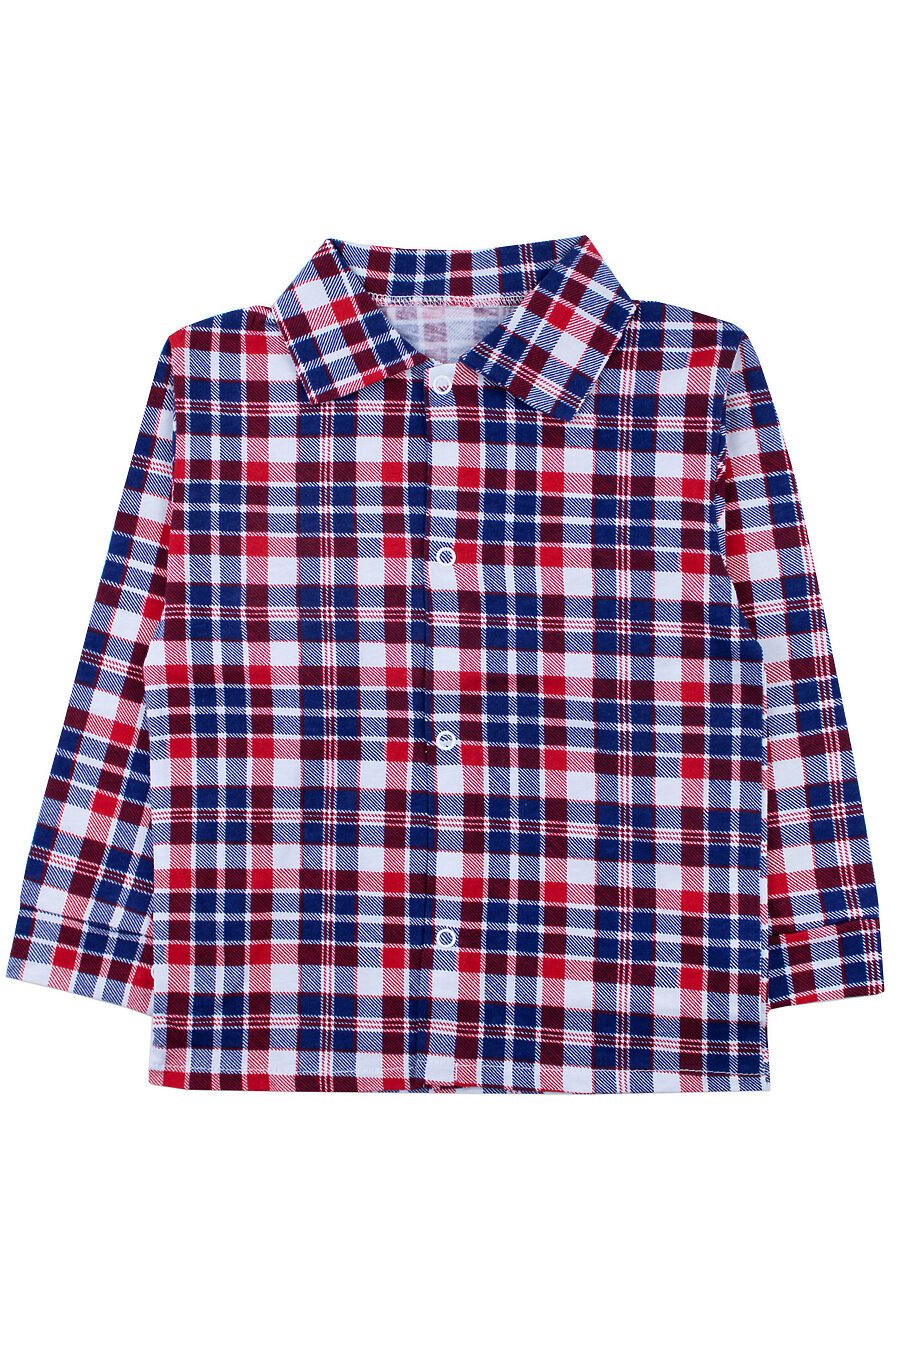 Рубашка YOULALA (742507), купить в Moyo.moda